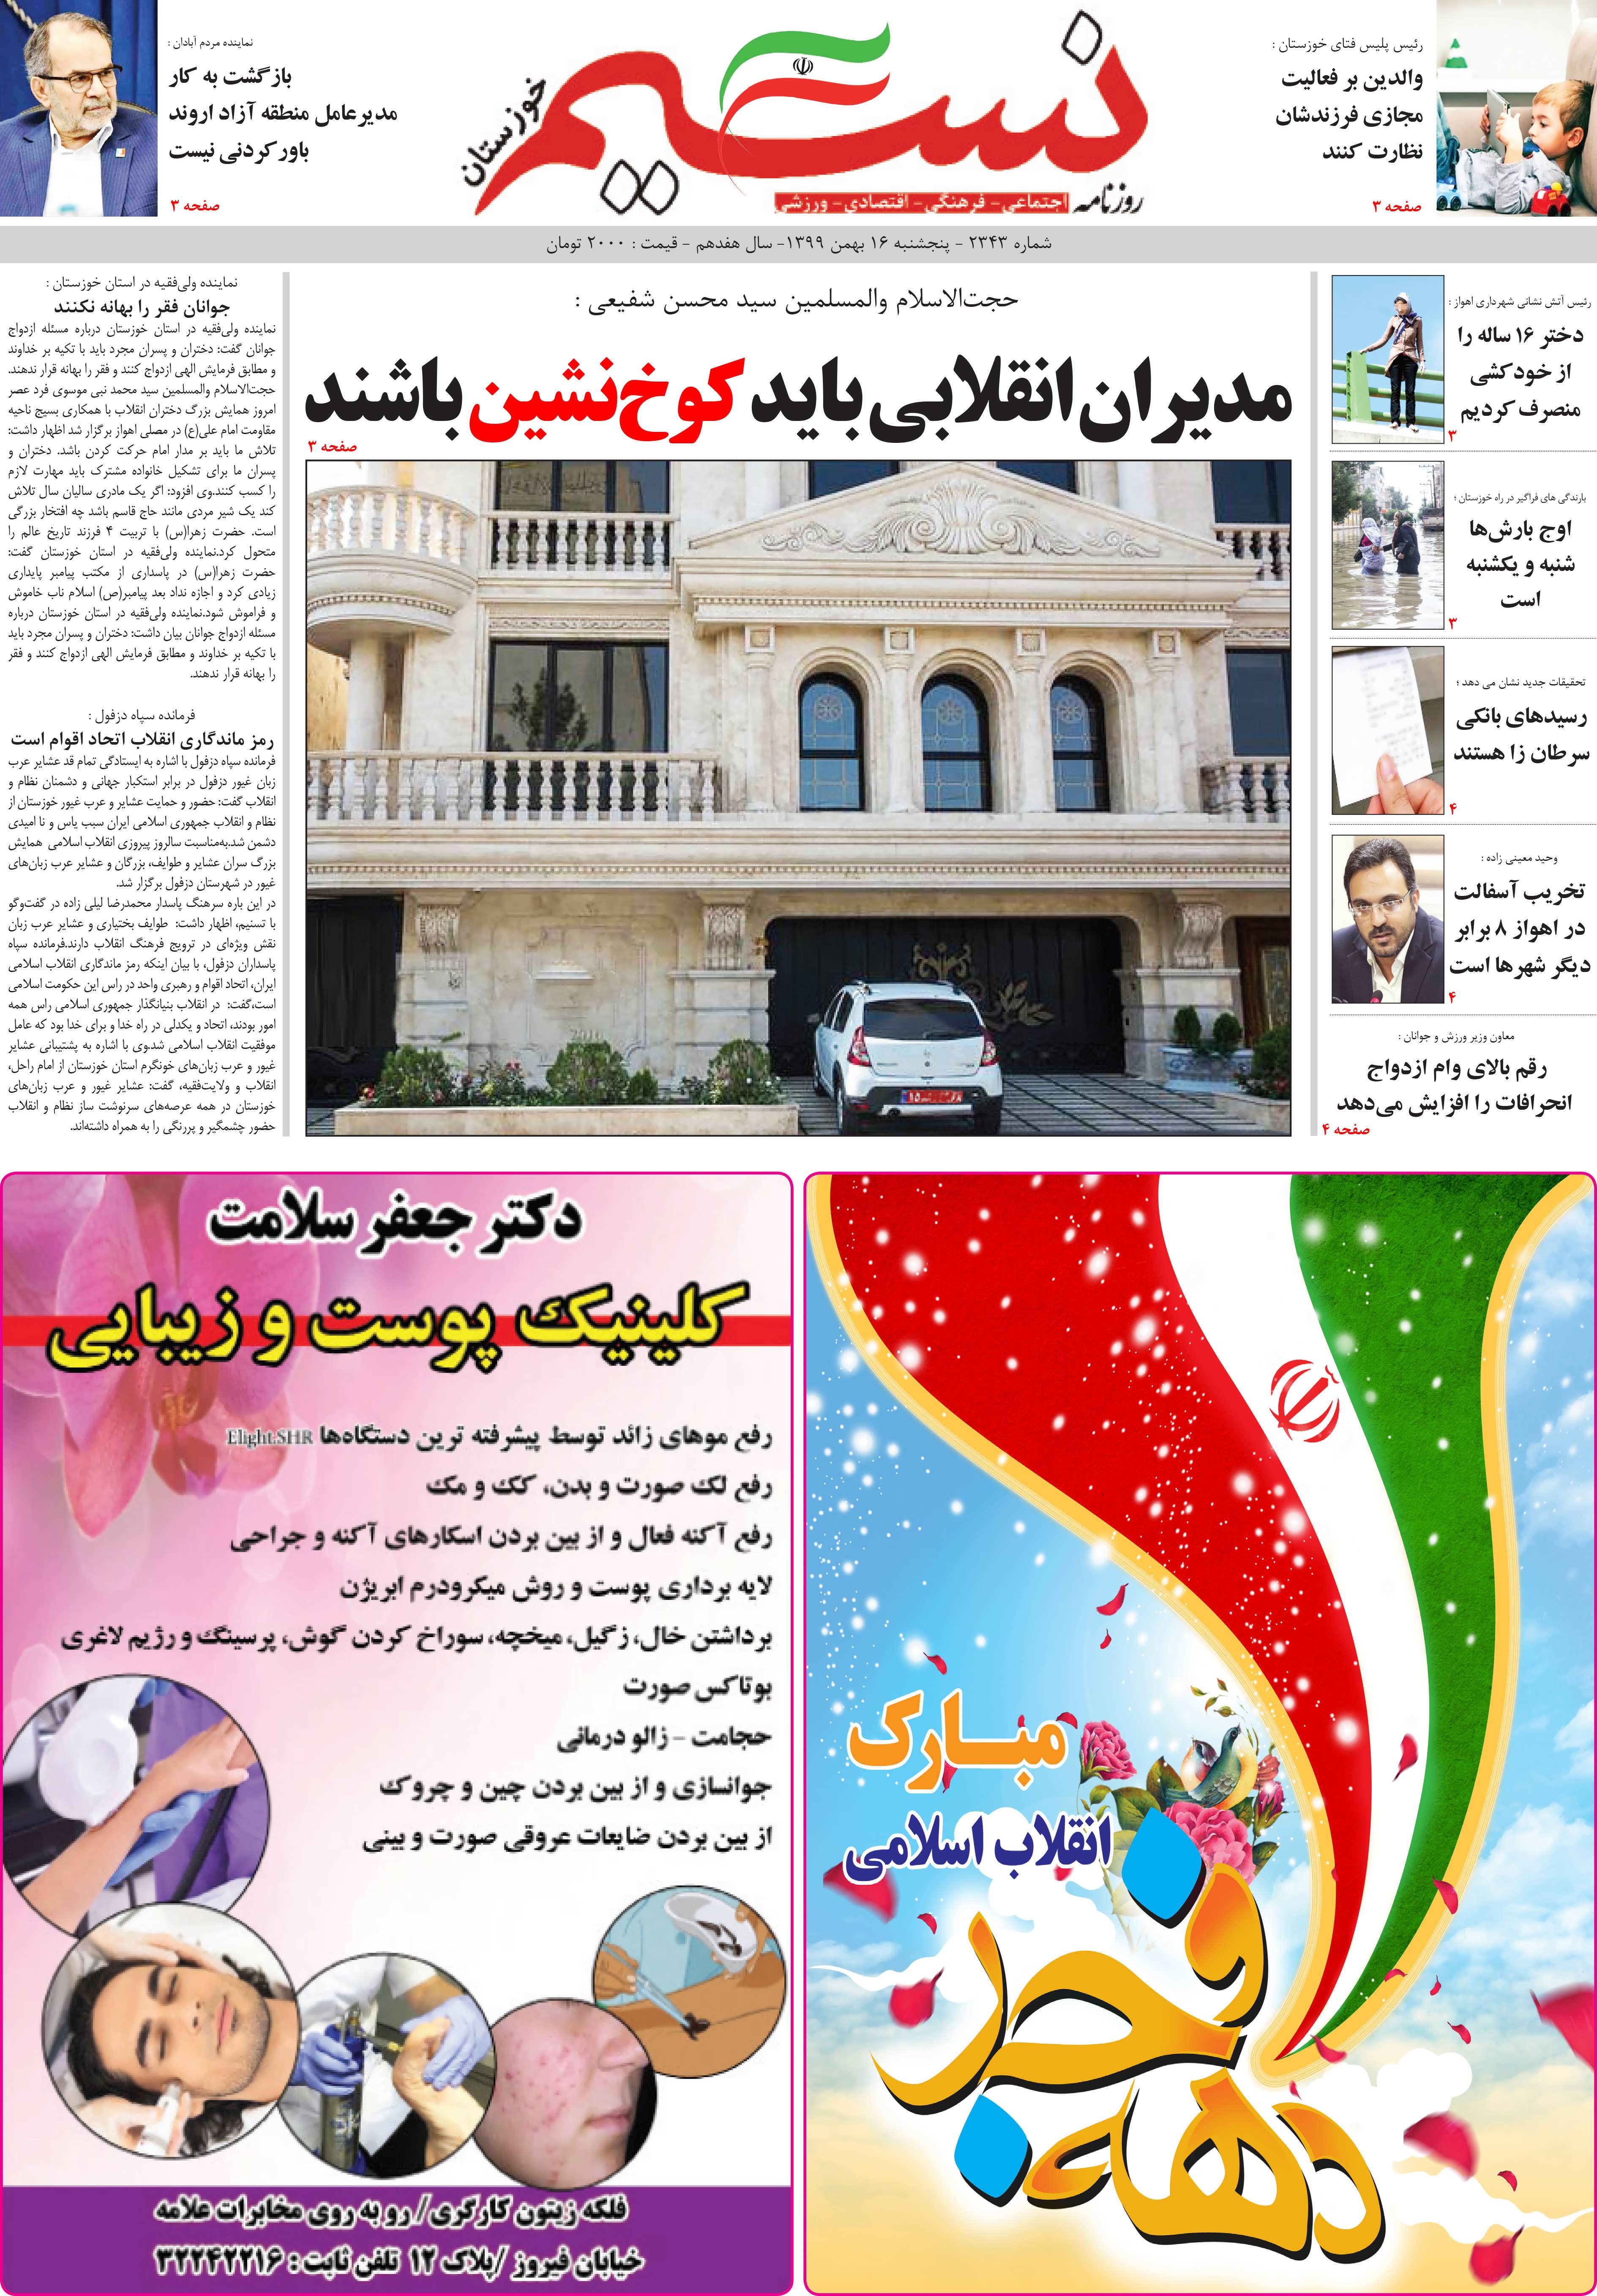 صفحه اصلی روزنامه نسیم شماره 2343 